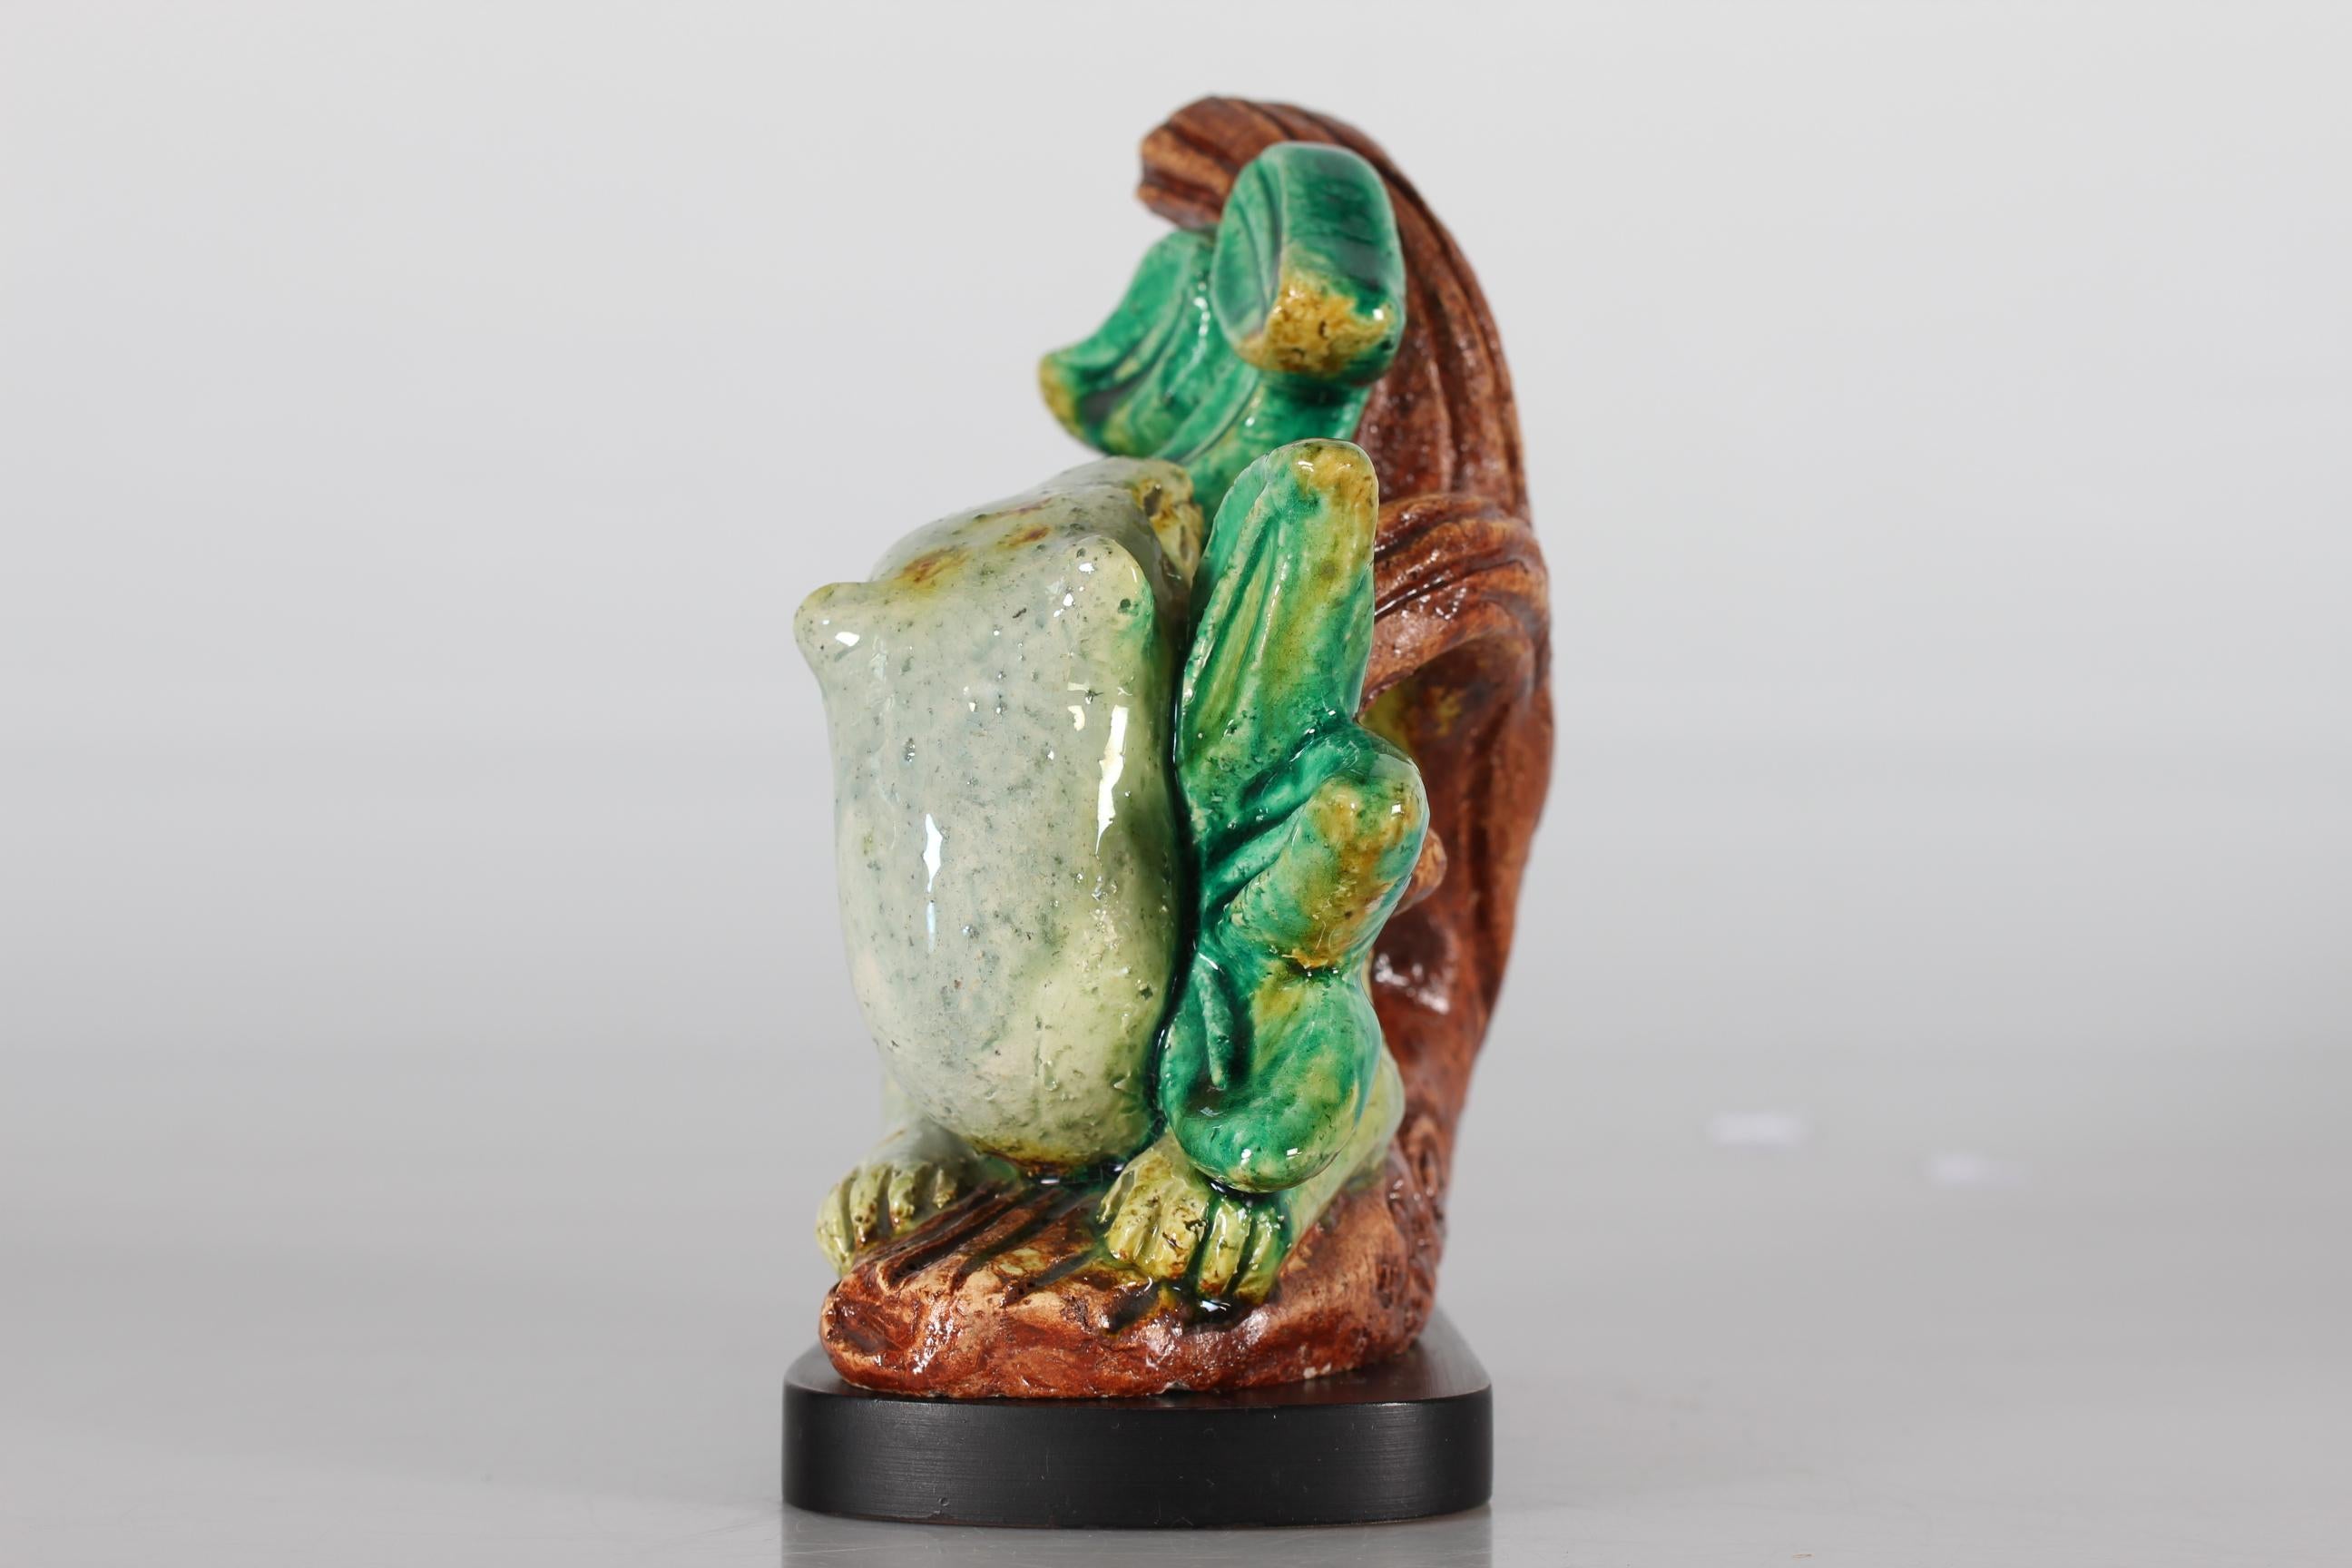 Vieille sculpture/figurine d'une belette dans la nature par Gunnar Nylund pour Rörstrand, Suède. Fabriqué dans les années 1960. 

La sculpture est faite de grès et est émaillée brillamment dans différentes couleurs vives de brun, vert, blanc et